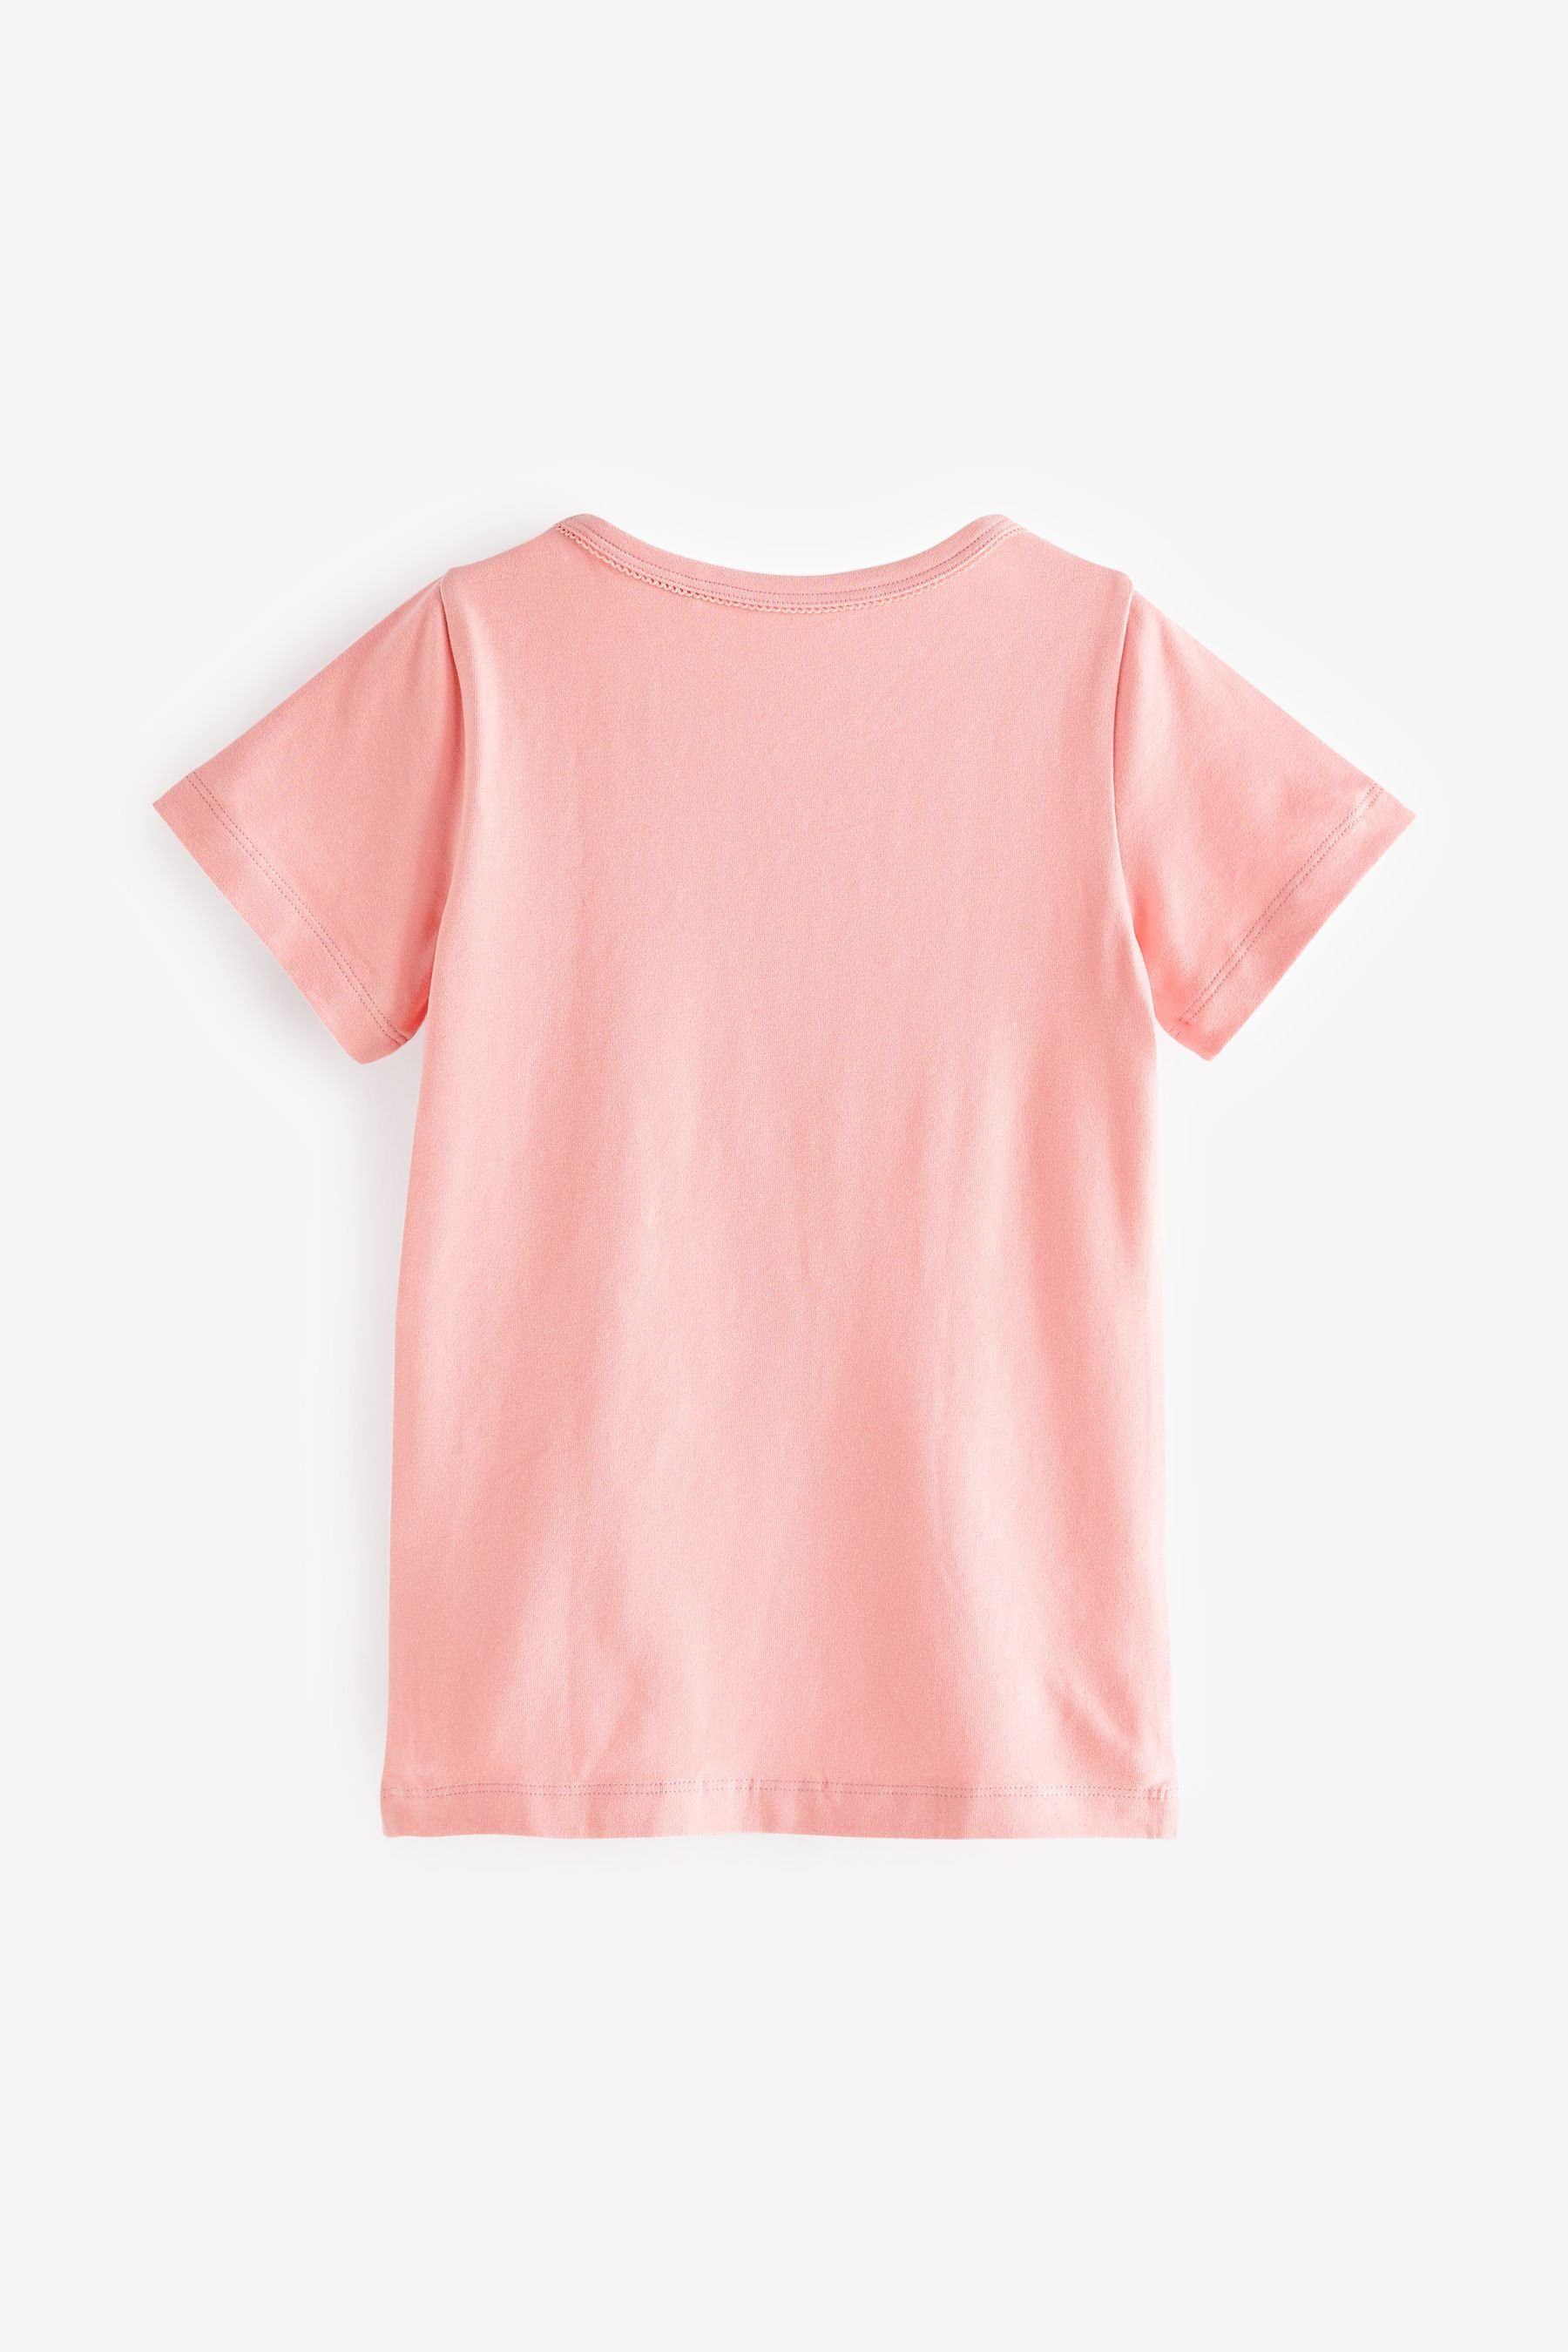 Next Unterhemd Unterhemden, Sleeved Pink (2-St) 2er-Pack Short